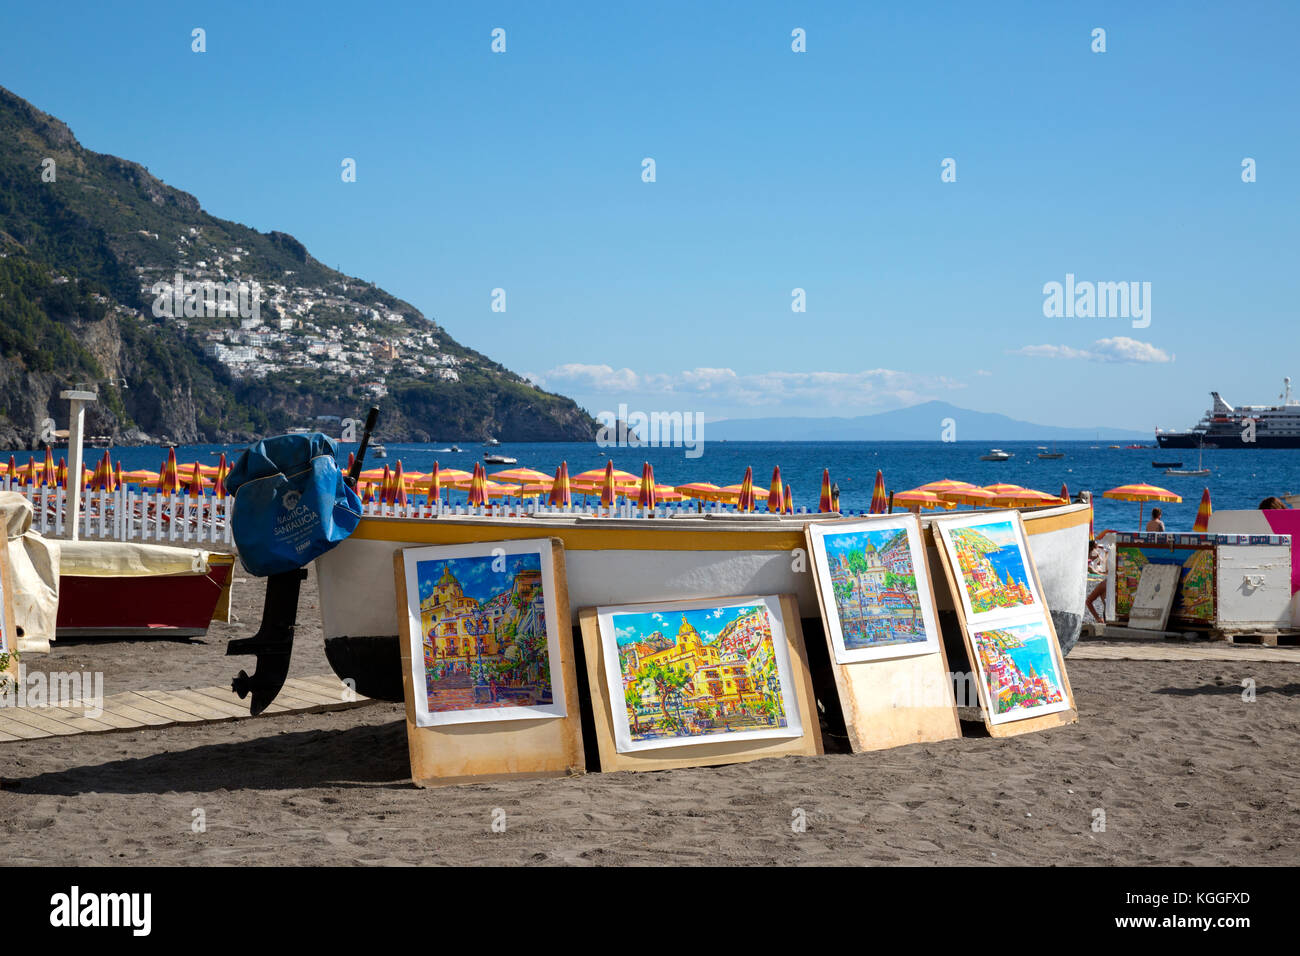 Tecnica di vendita esposti contro una barca sulla spiaggia di Positano, Italia Foto Stock